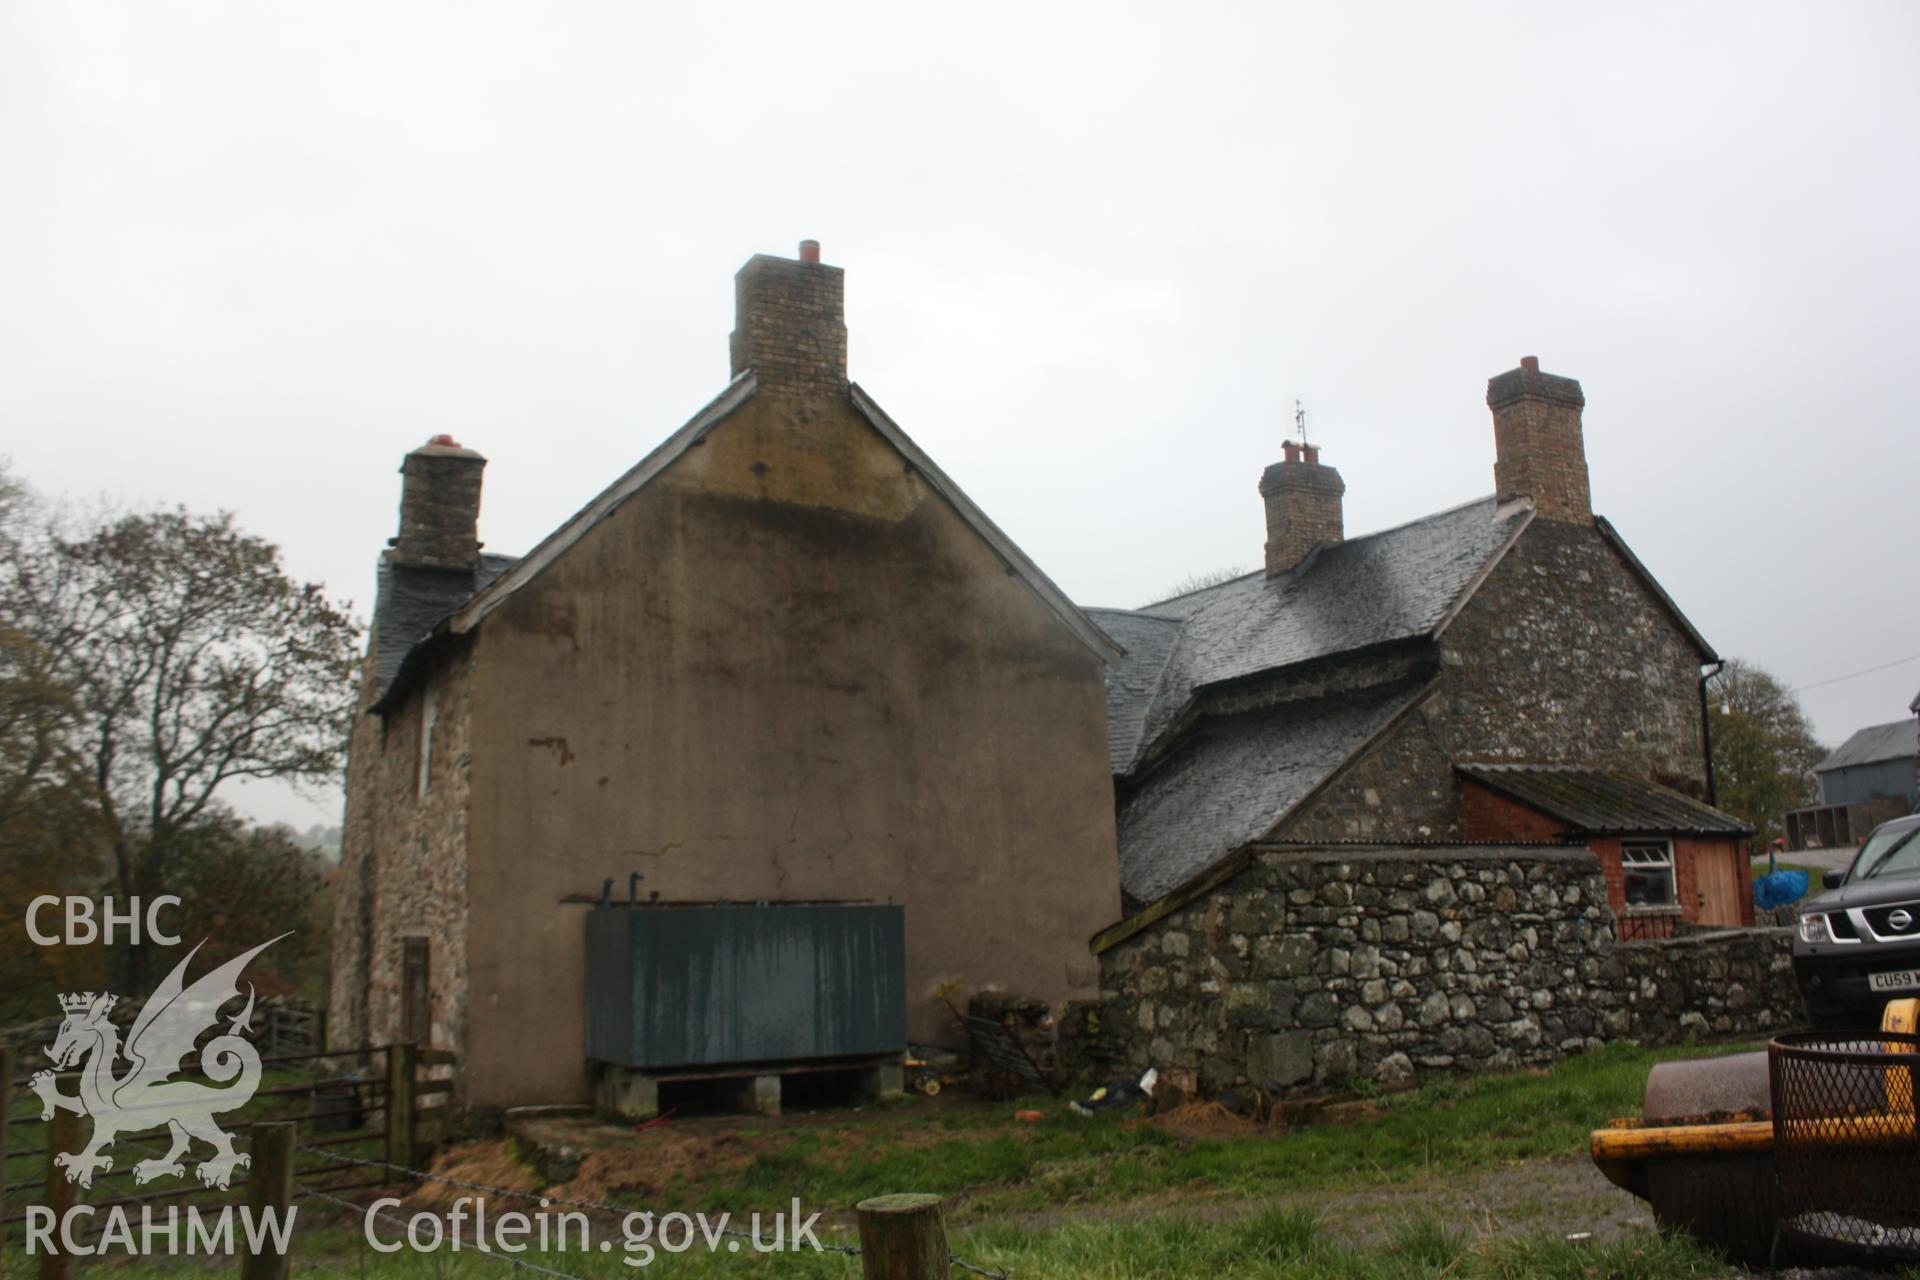 External view of Glanhafon-Fawr Farmhouse. Photographic survey of Glanhafon-Fawr Farmhouse conducted by Geoff Ward on 4th November 2010.